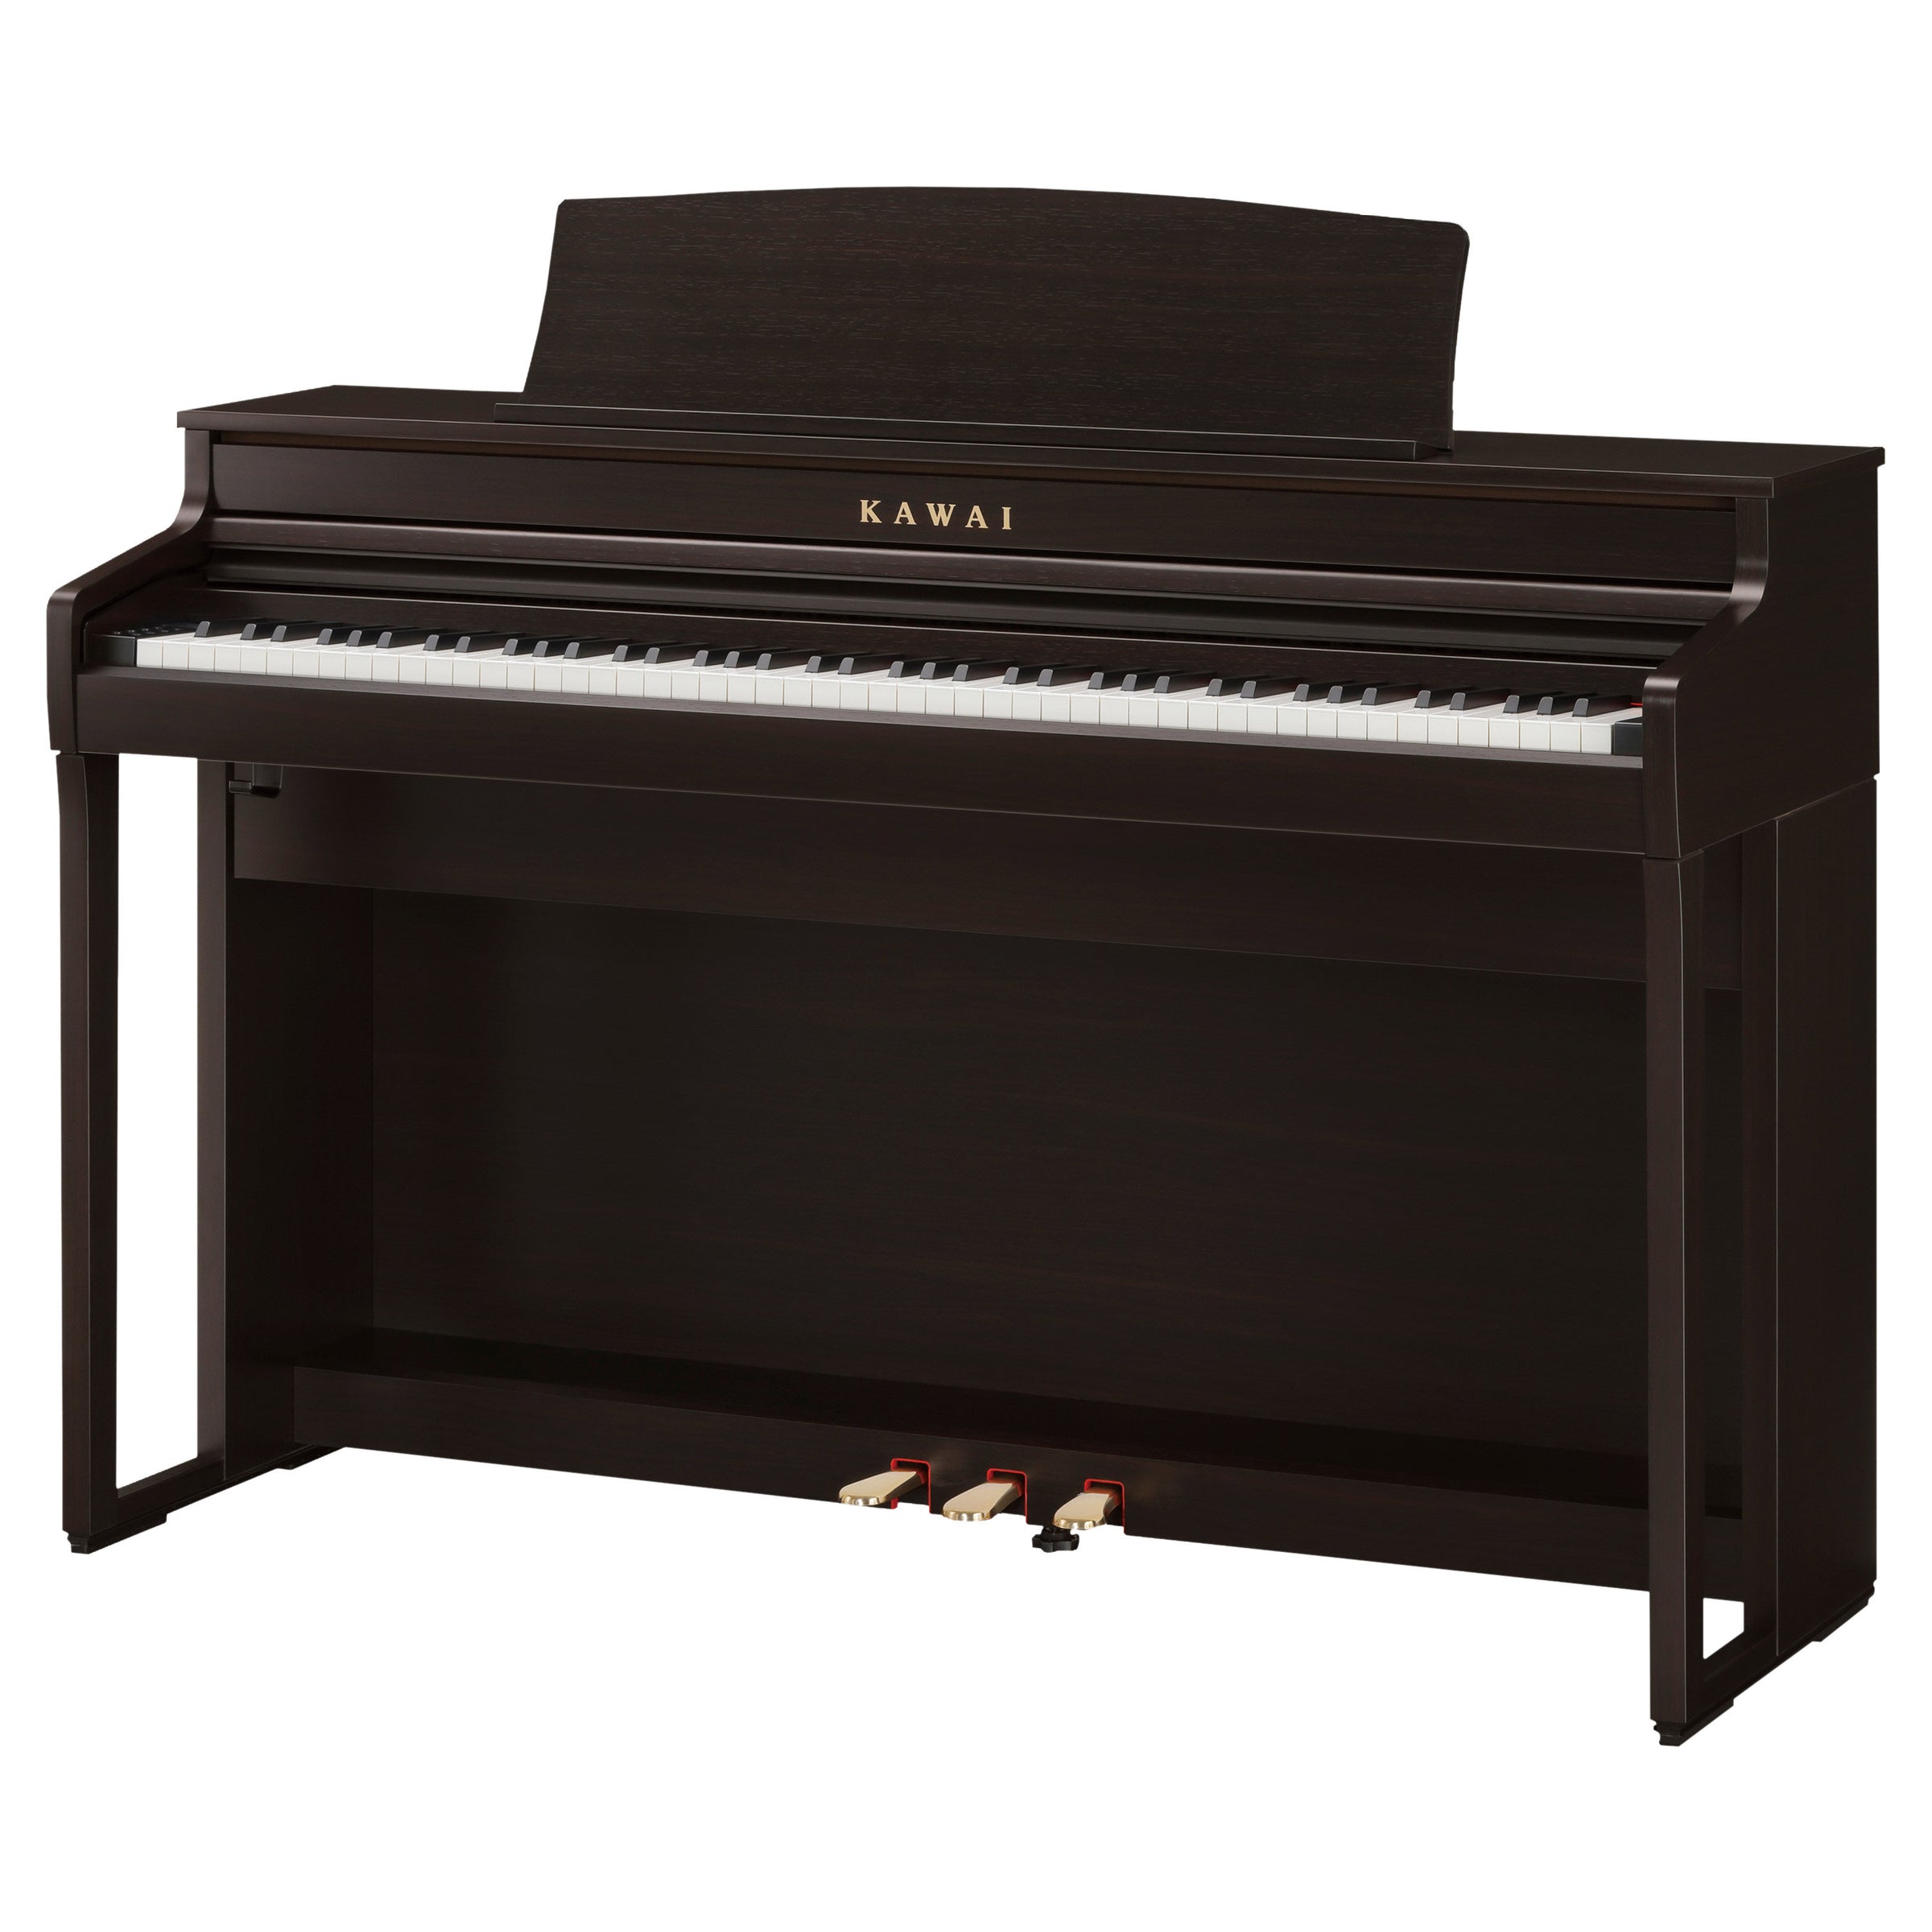 Kawai CA401 88-key Digital Piano - Premium Rosewood zOSO mUSIC